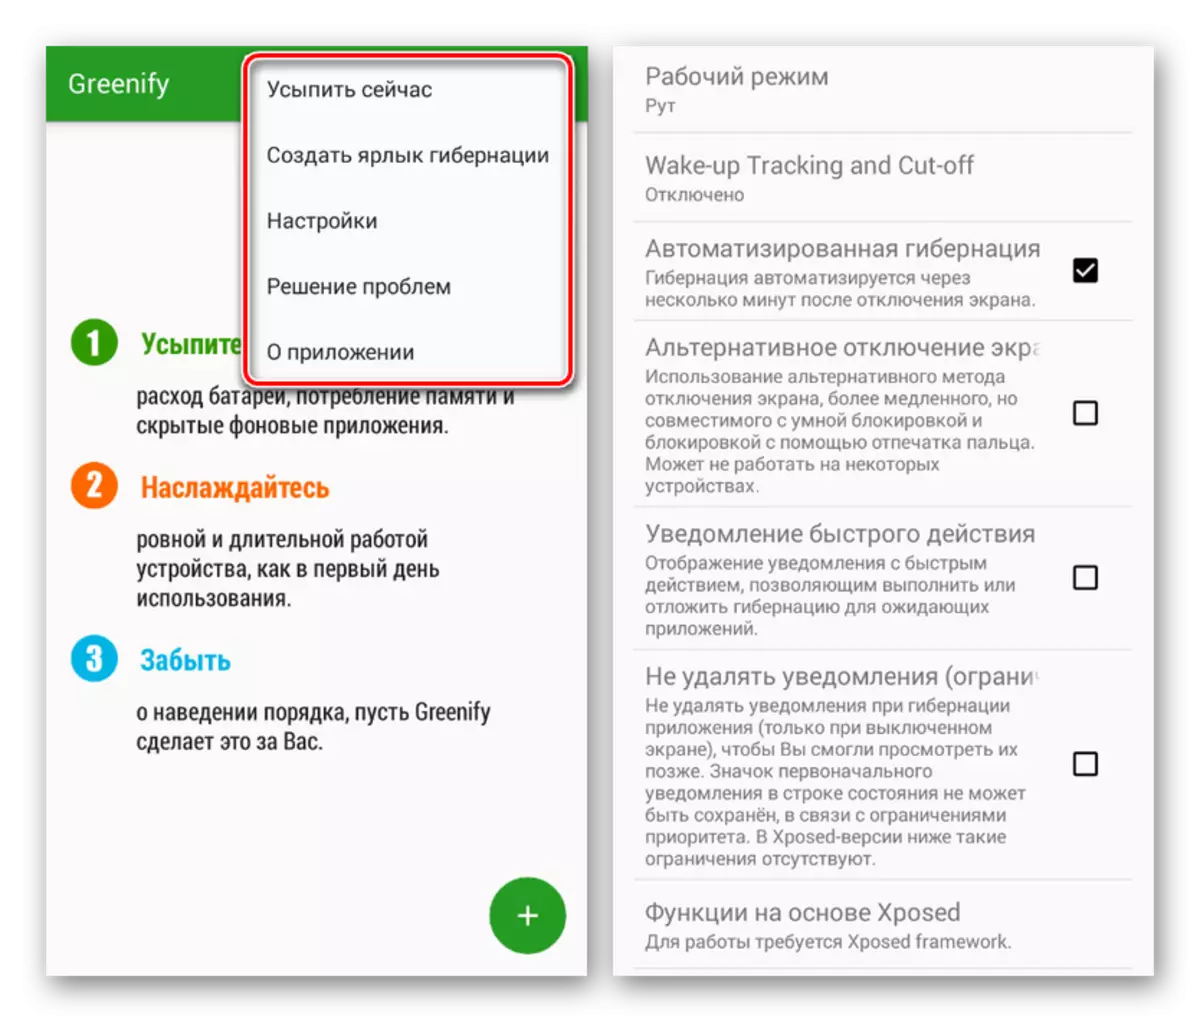 Pengaturan internal di aplikasi Greenify di Android